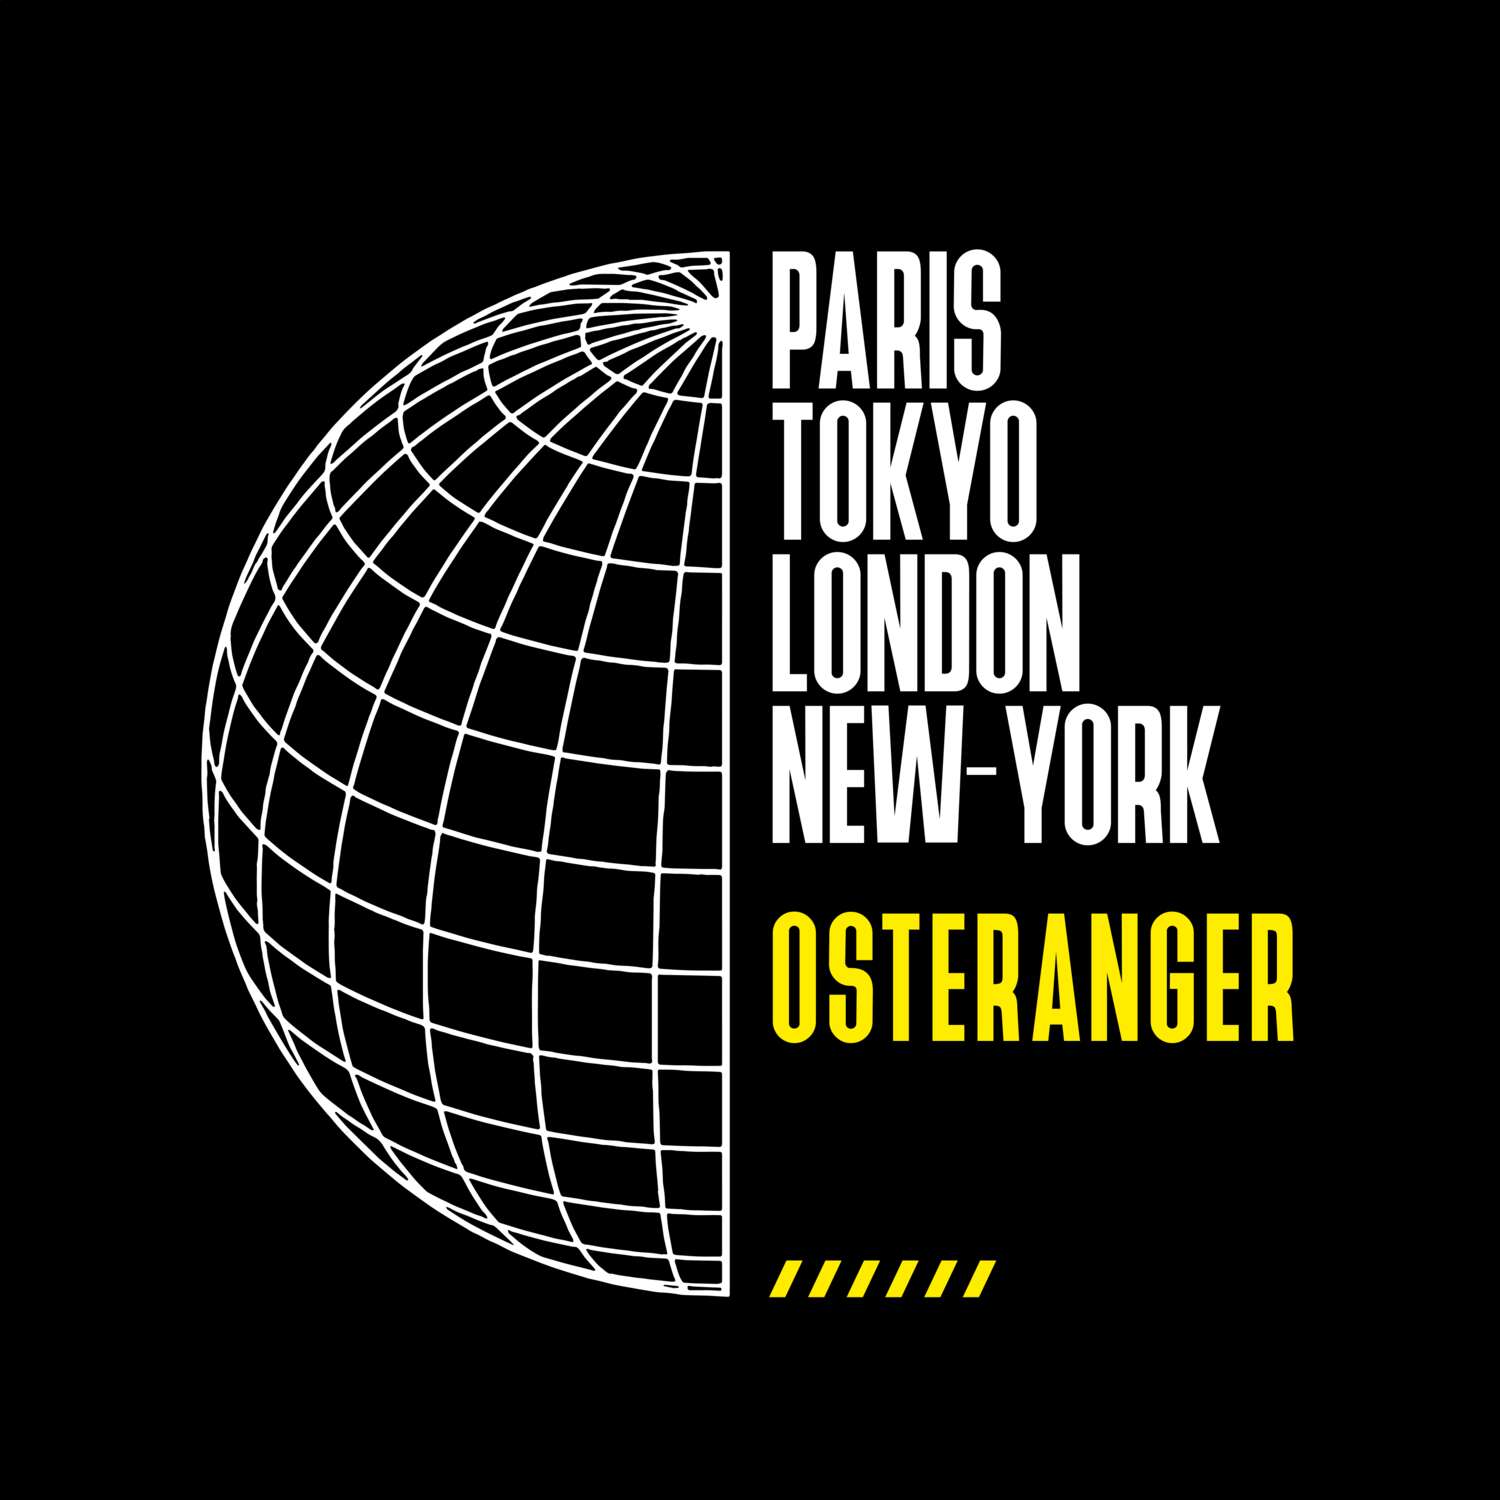 Osteranger T-Shirt »Paris Tokyo London«